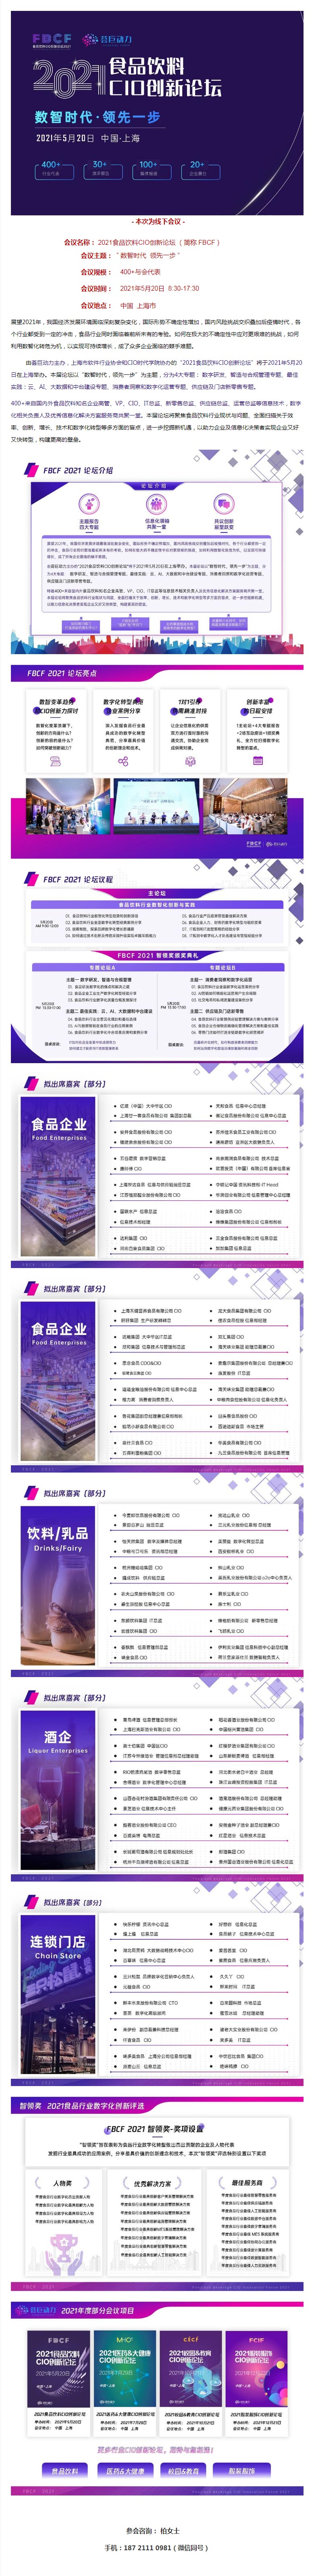 食品饮料CIO创新论坛（FBCF-2021）---上海站-_-共话数字化-_-新零售运营-_-消费者.jpg